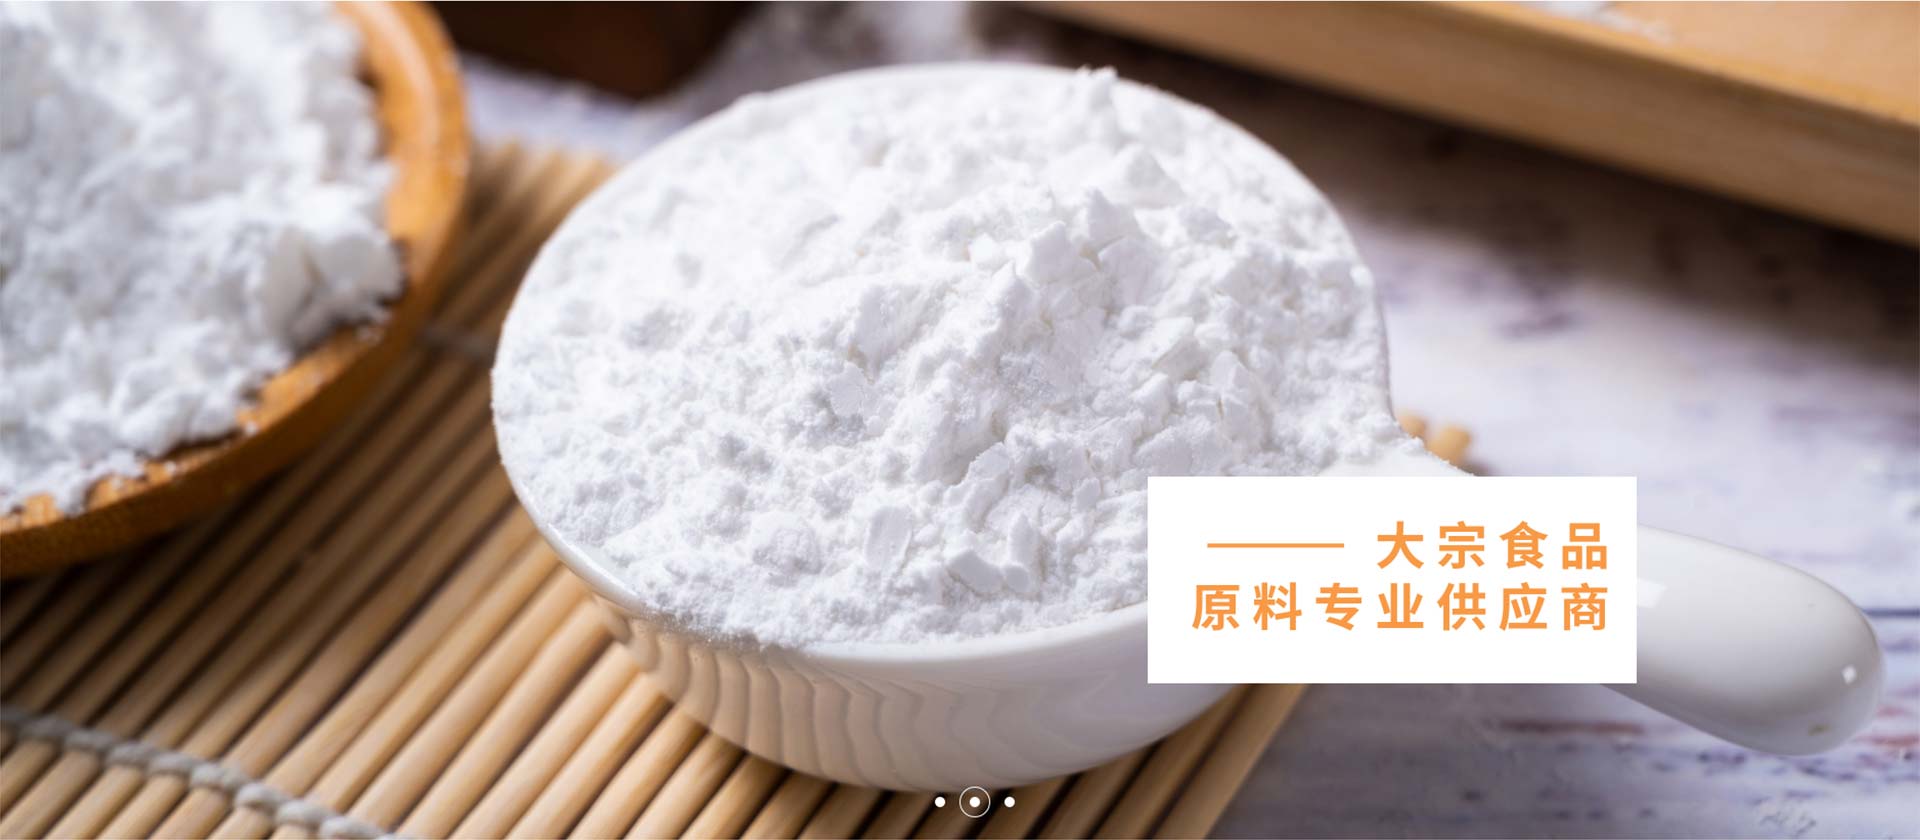 熊貓-東林強強聯合為華南食品行業提供優質乳品 為華南食品行業提供優質乳品